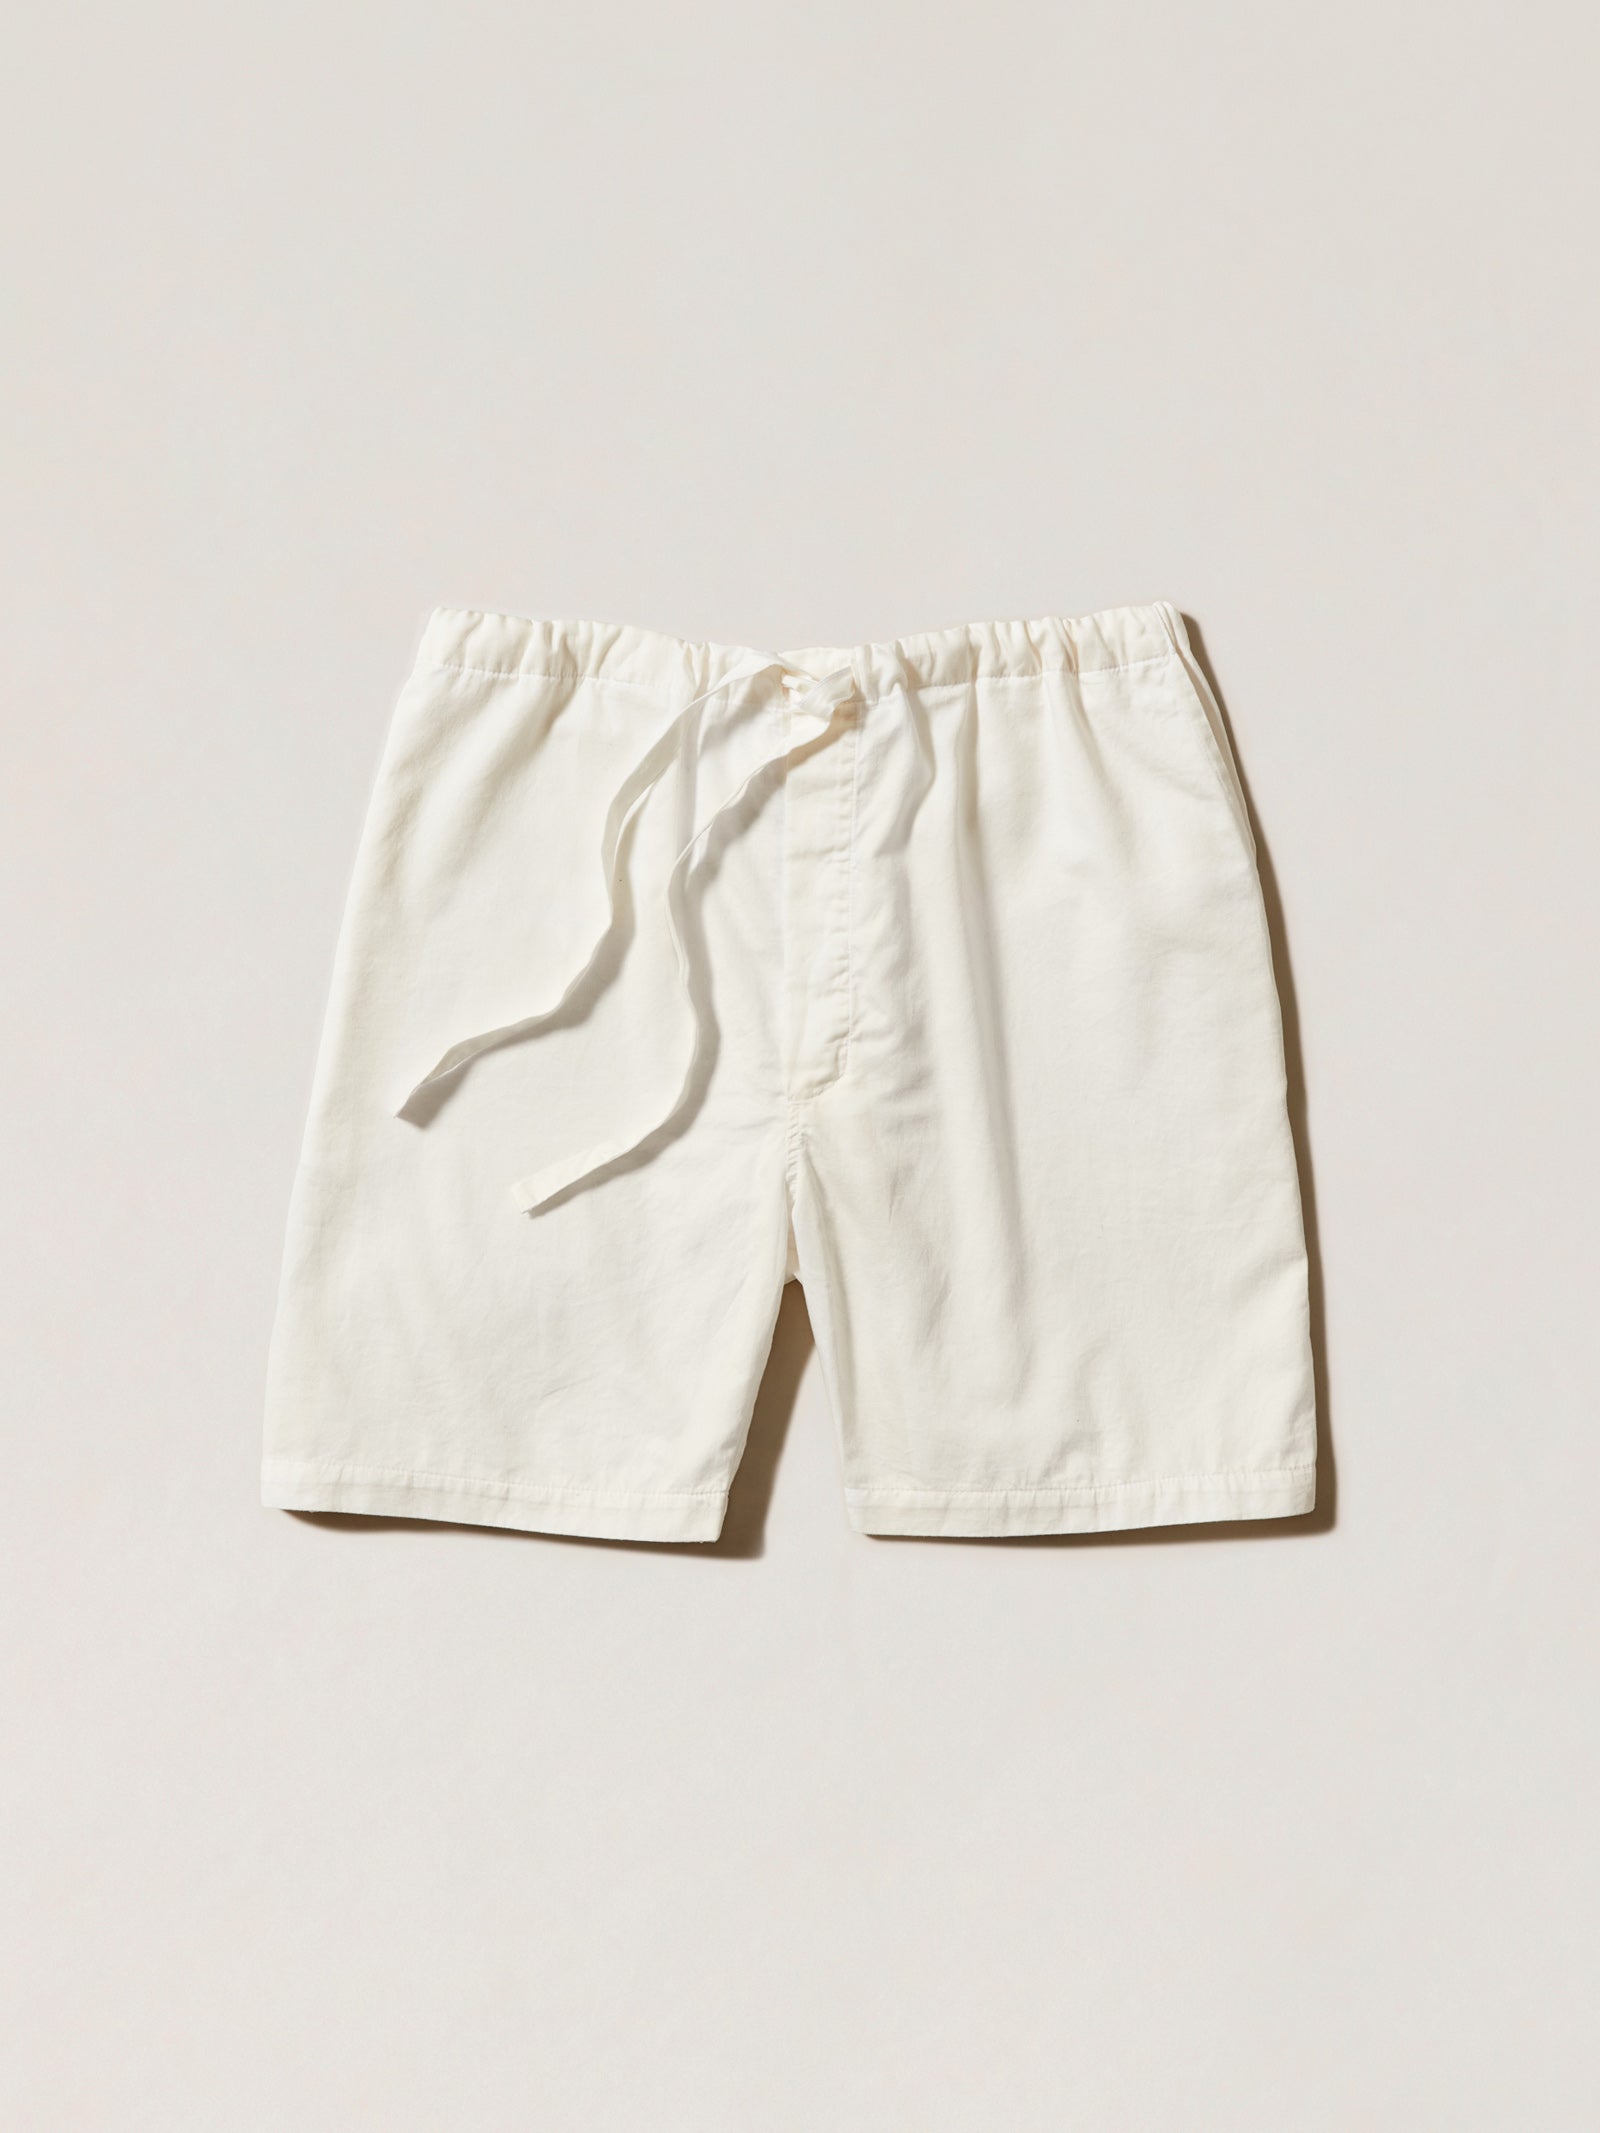 100% cotton pyjama shorts, white drawstring waist lounge shorts